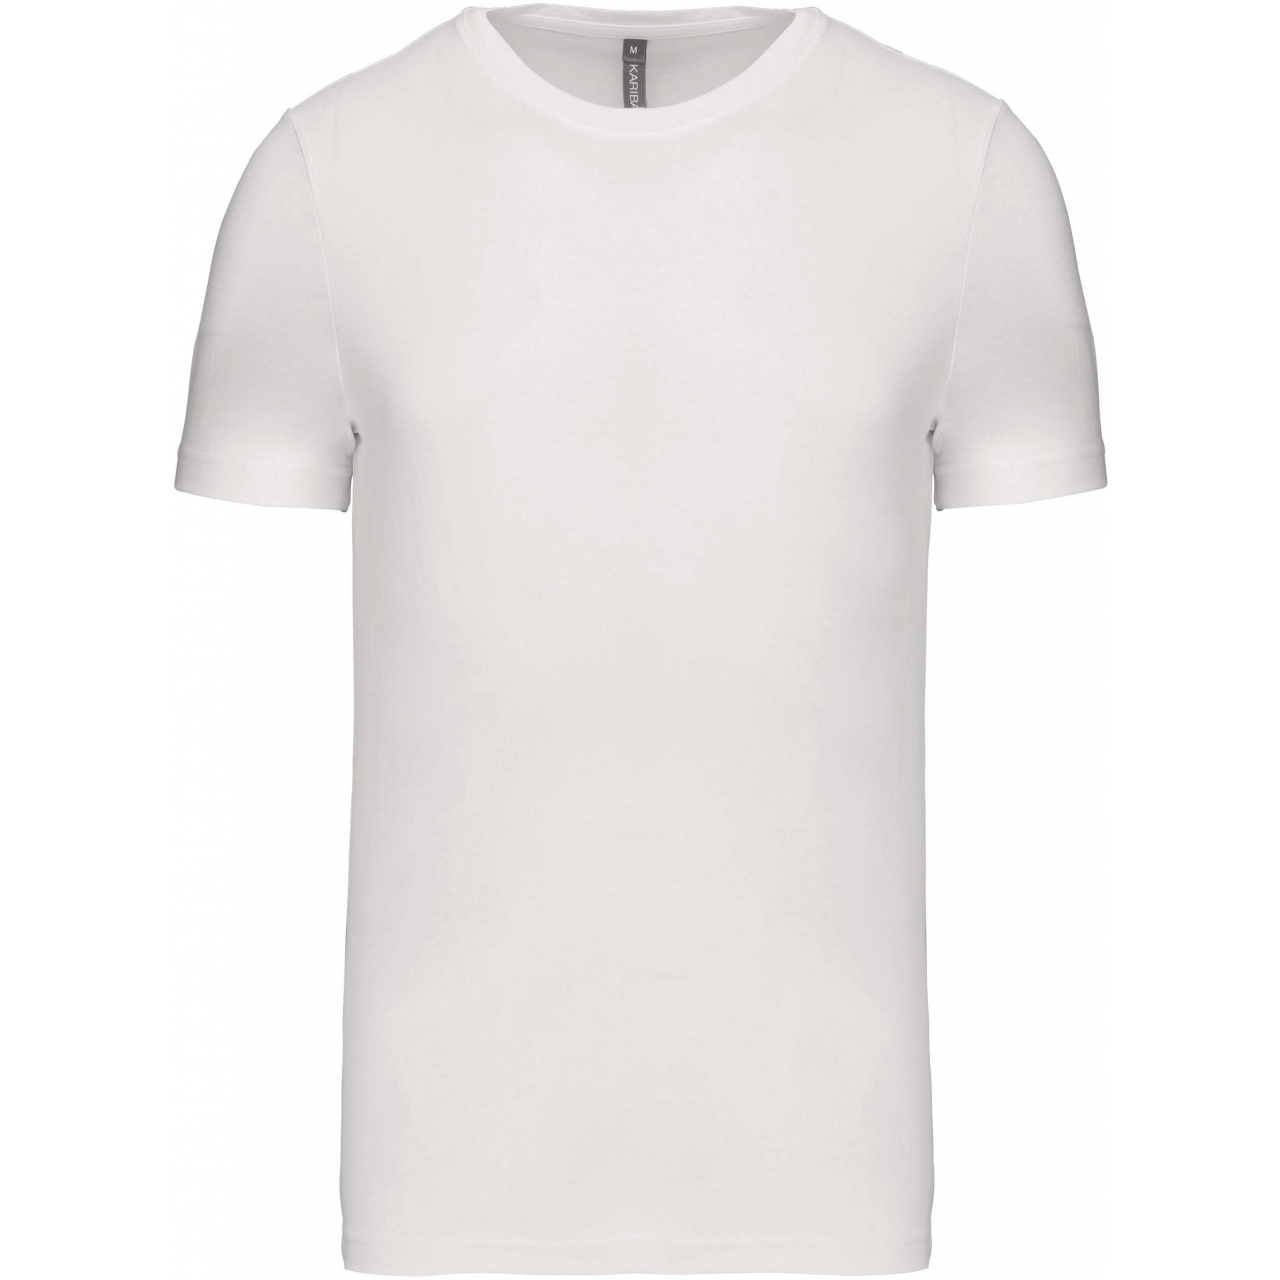 Pánské tričko Kariban krátký rukáv - bílé, L